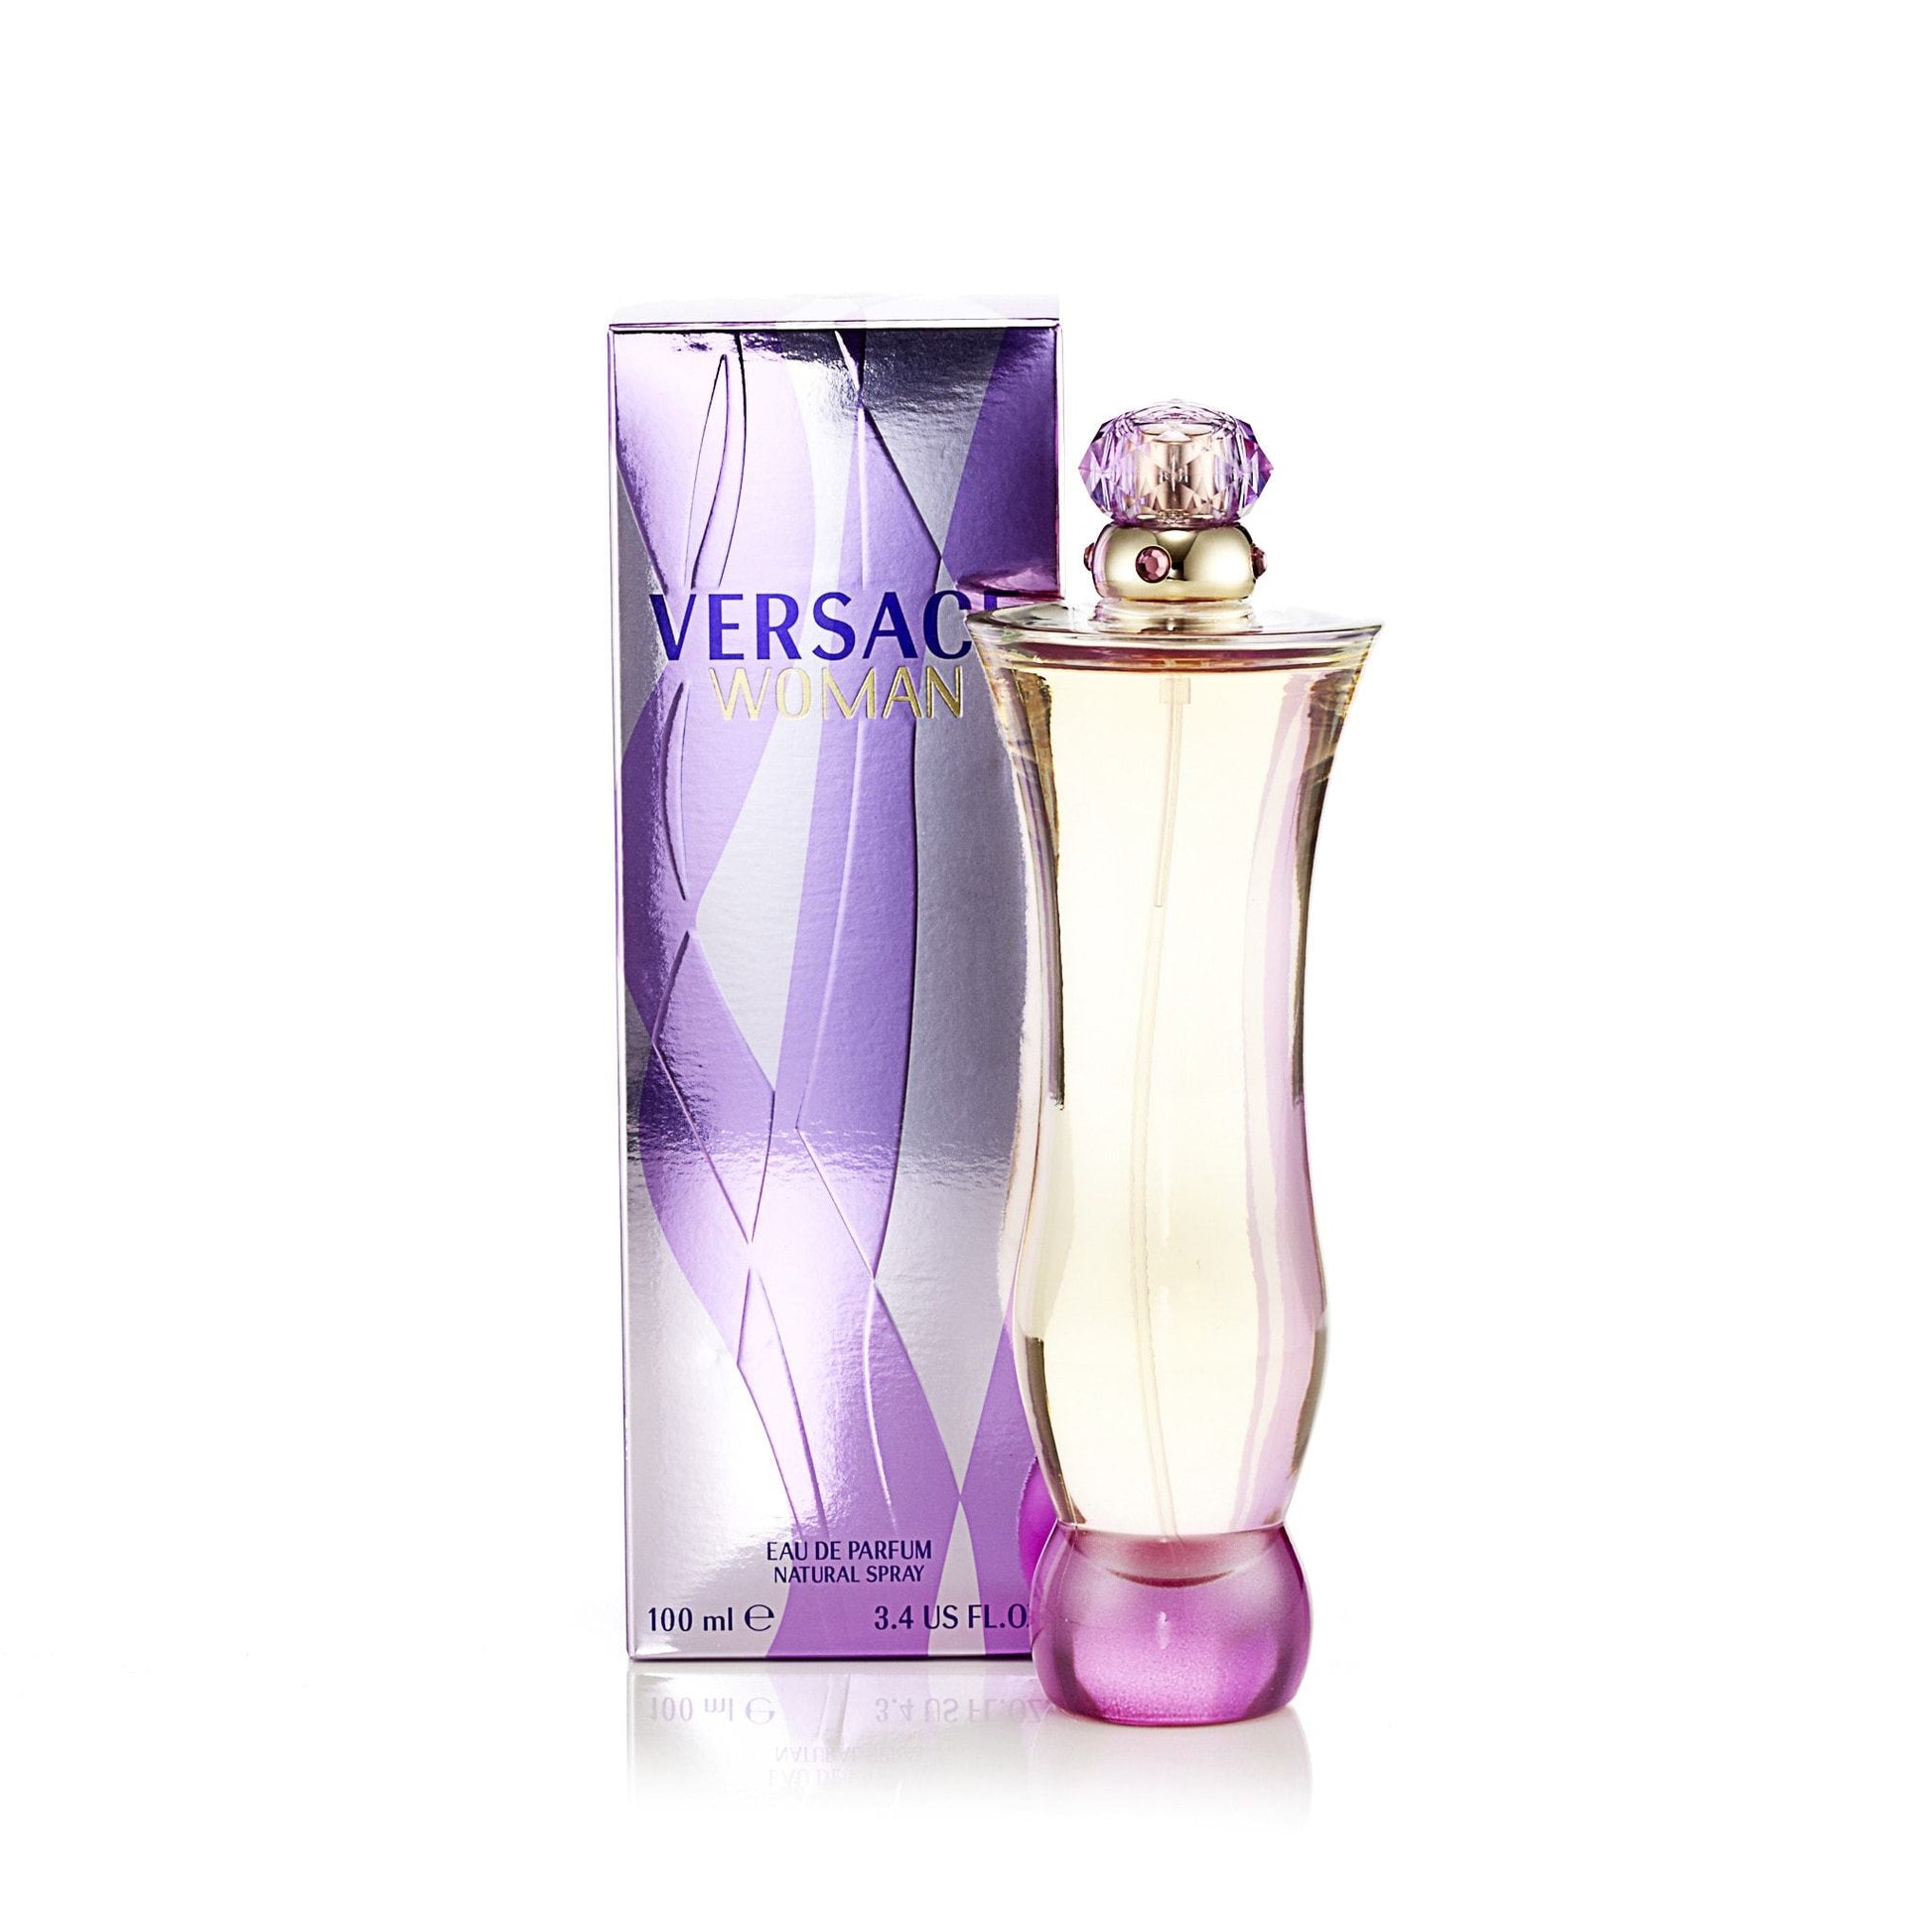 Versace Woman Eau de Parfum Spray for Women by Versace Fragrance Outlet